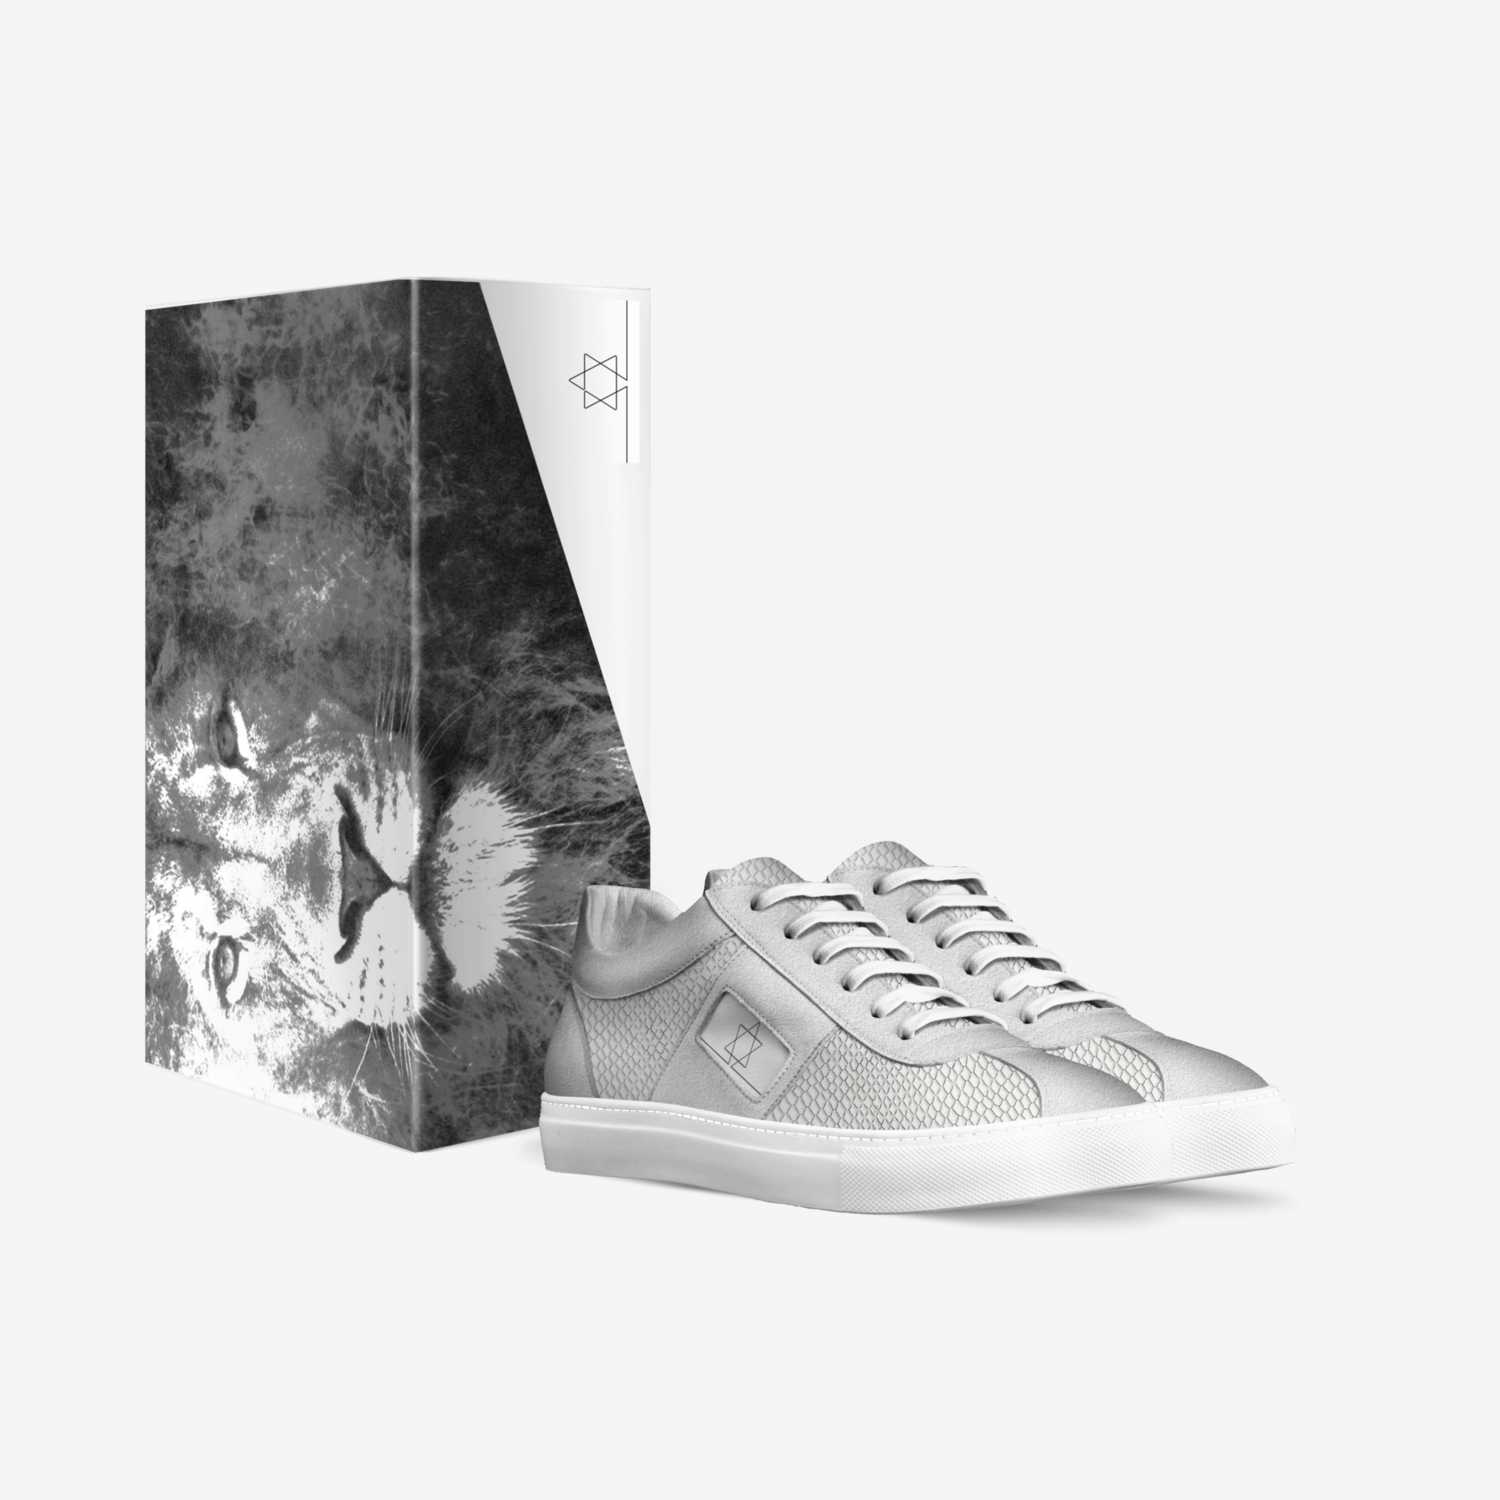 רמב״ם custom made in Italy shoes by Ricardo Yoreh Ladino | Box view